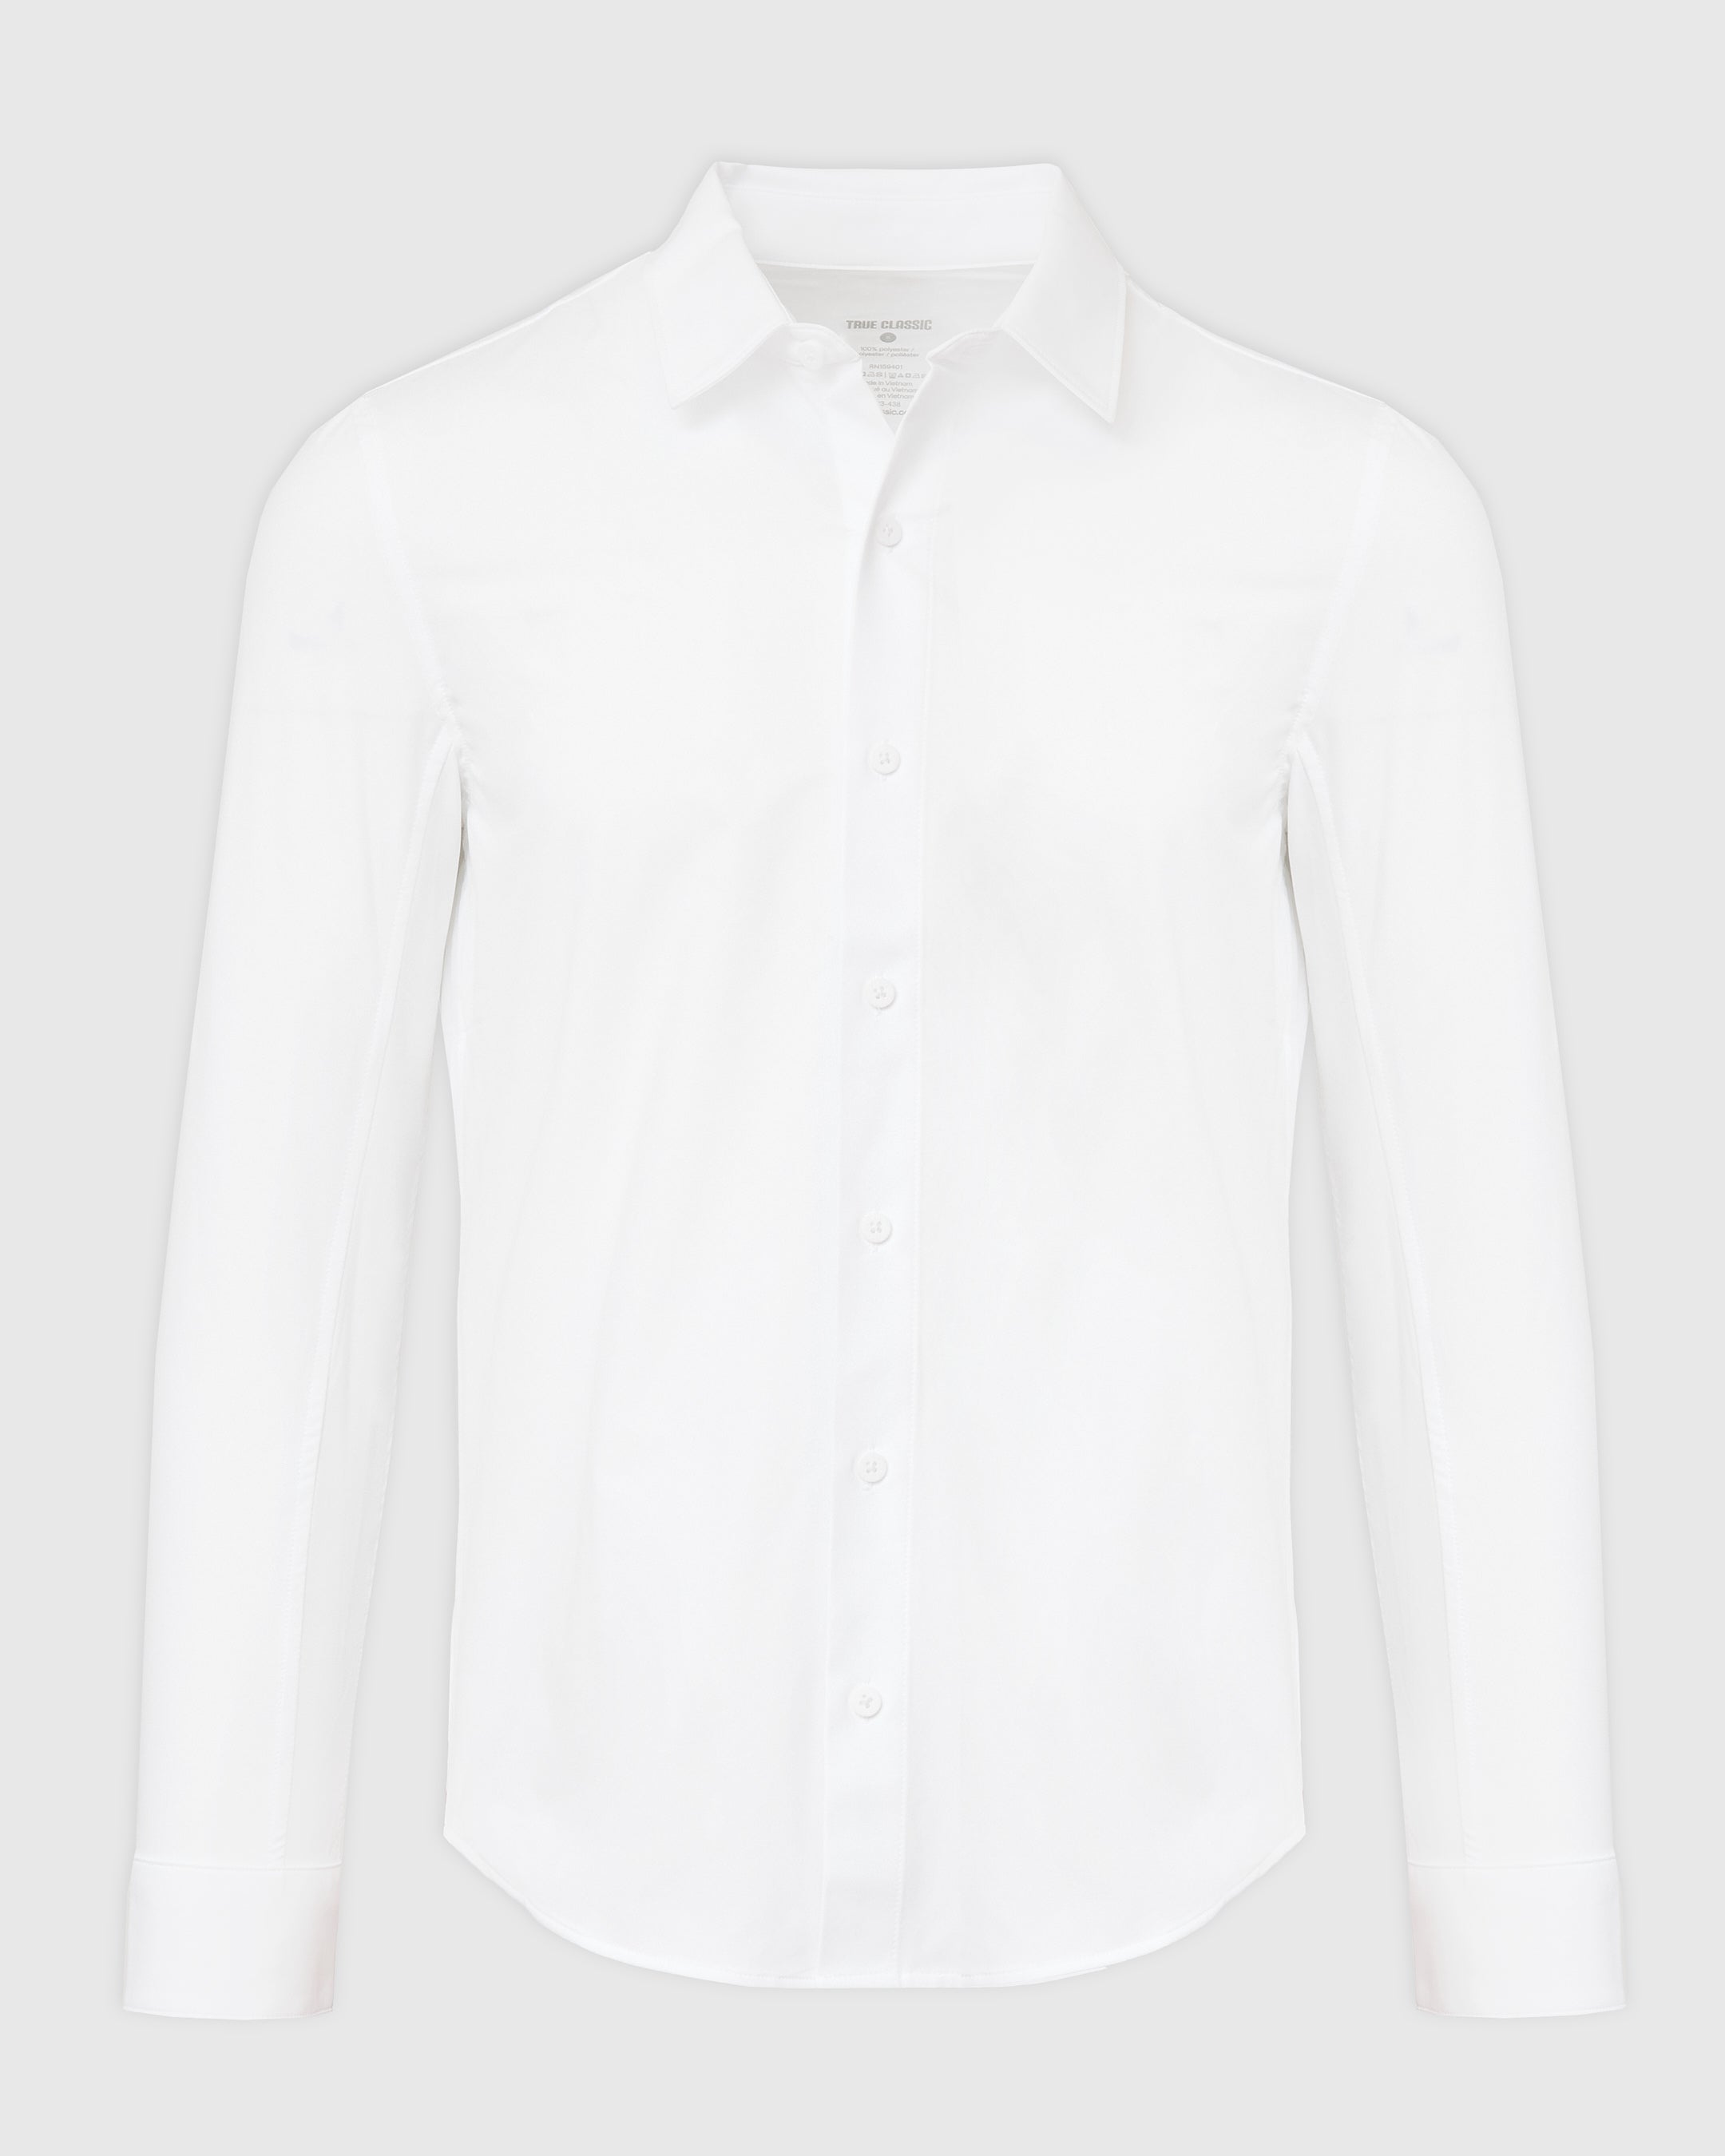 White Commuter Long Sleeve Button Up Shirt | White Commuter Long Sleeve ...